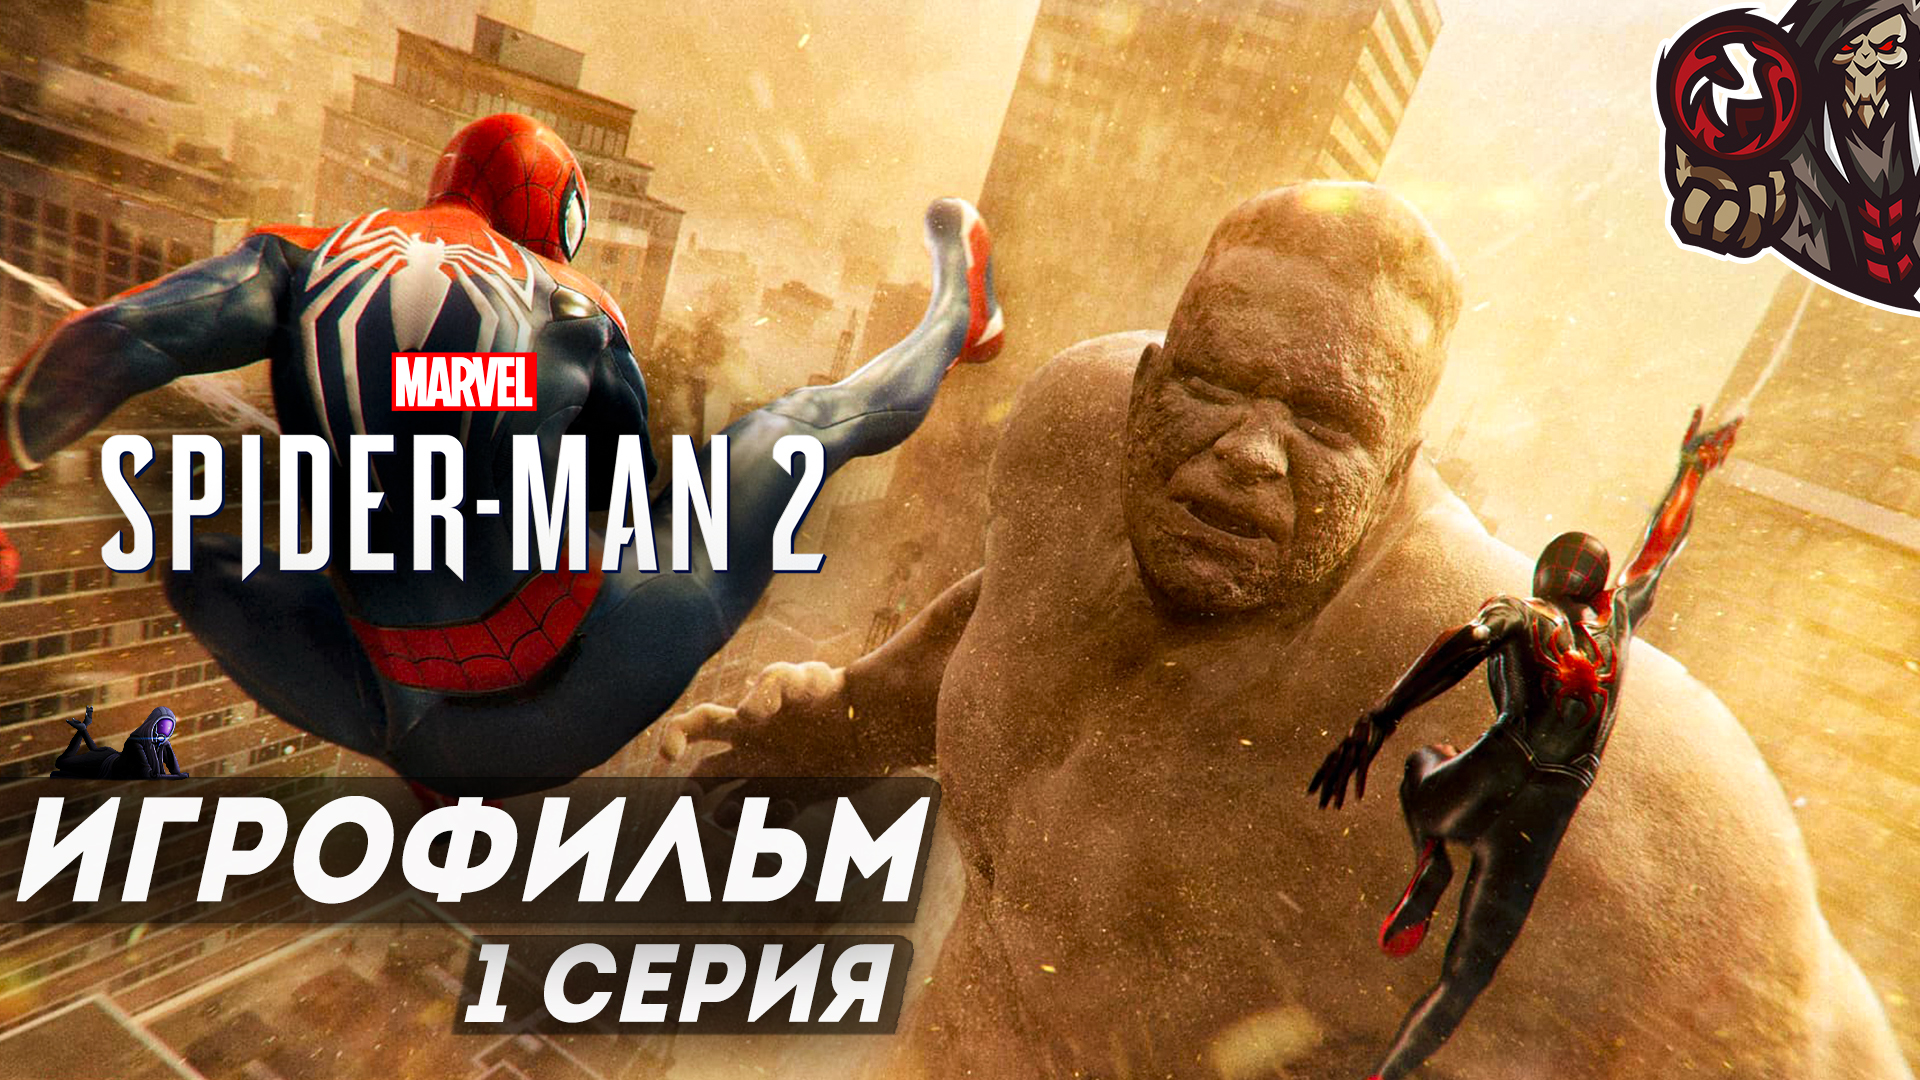 Marvel’s Spider-Man 2. Игрофильм (русская озвучка) #1 (12)